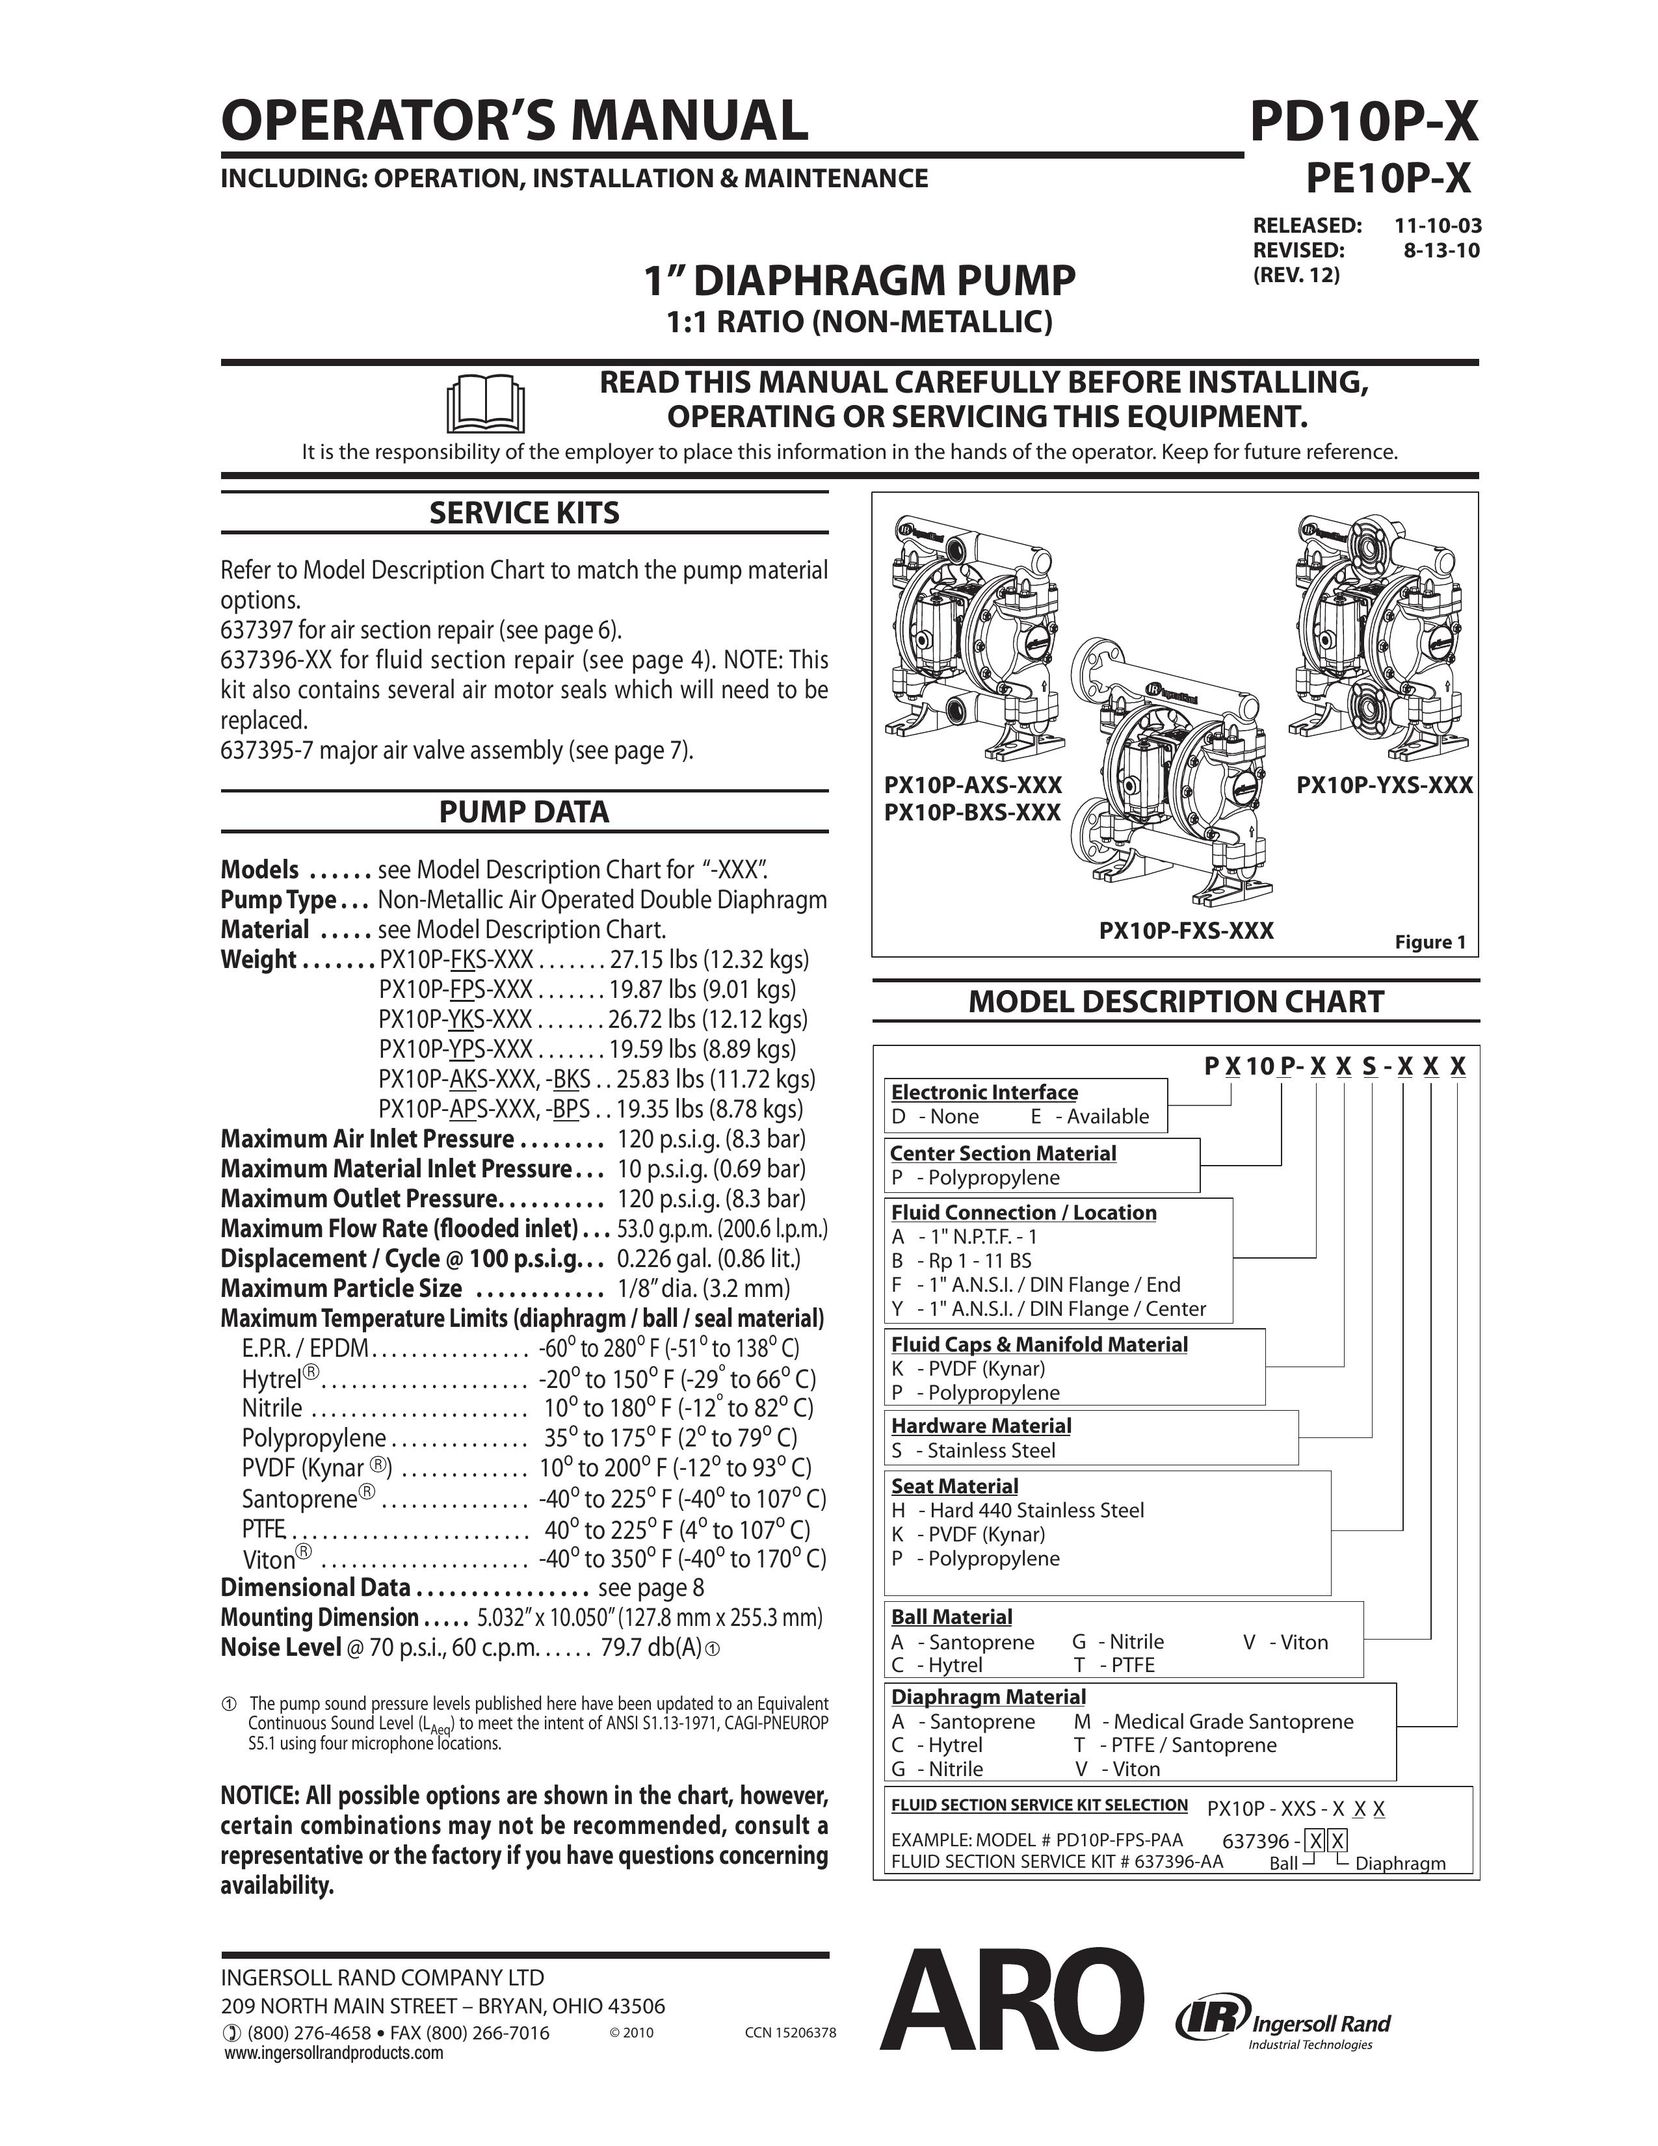 Ingersoll-Rand PD10P-X Breast Pump User Manual